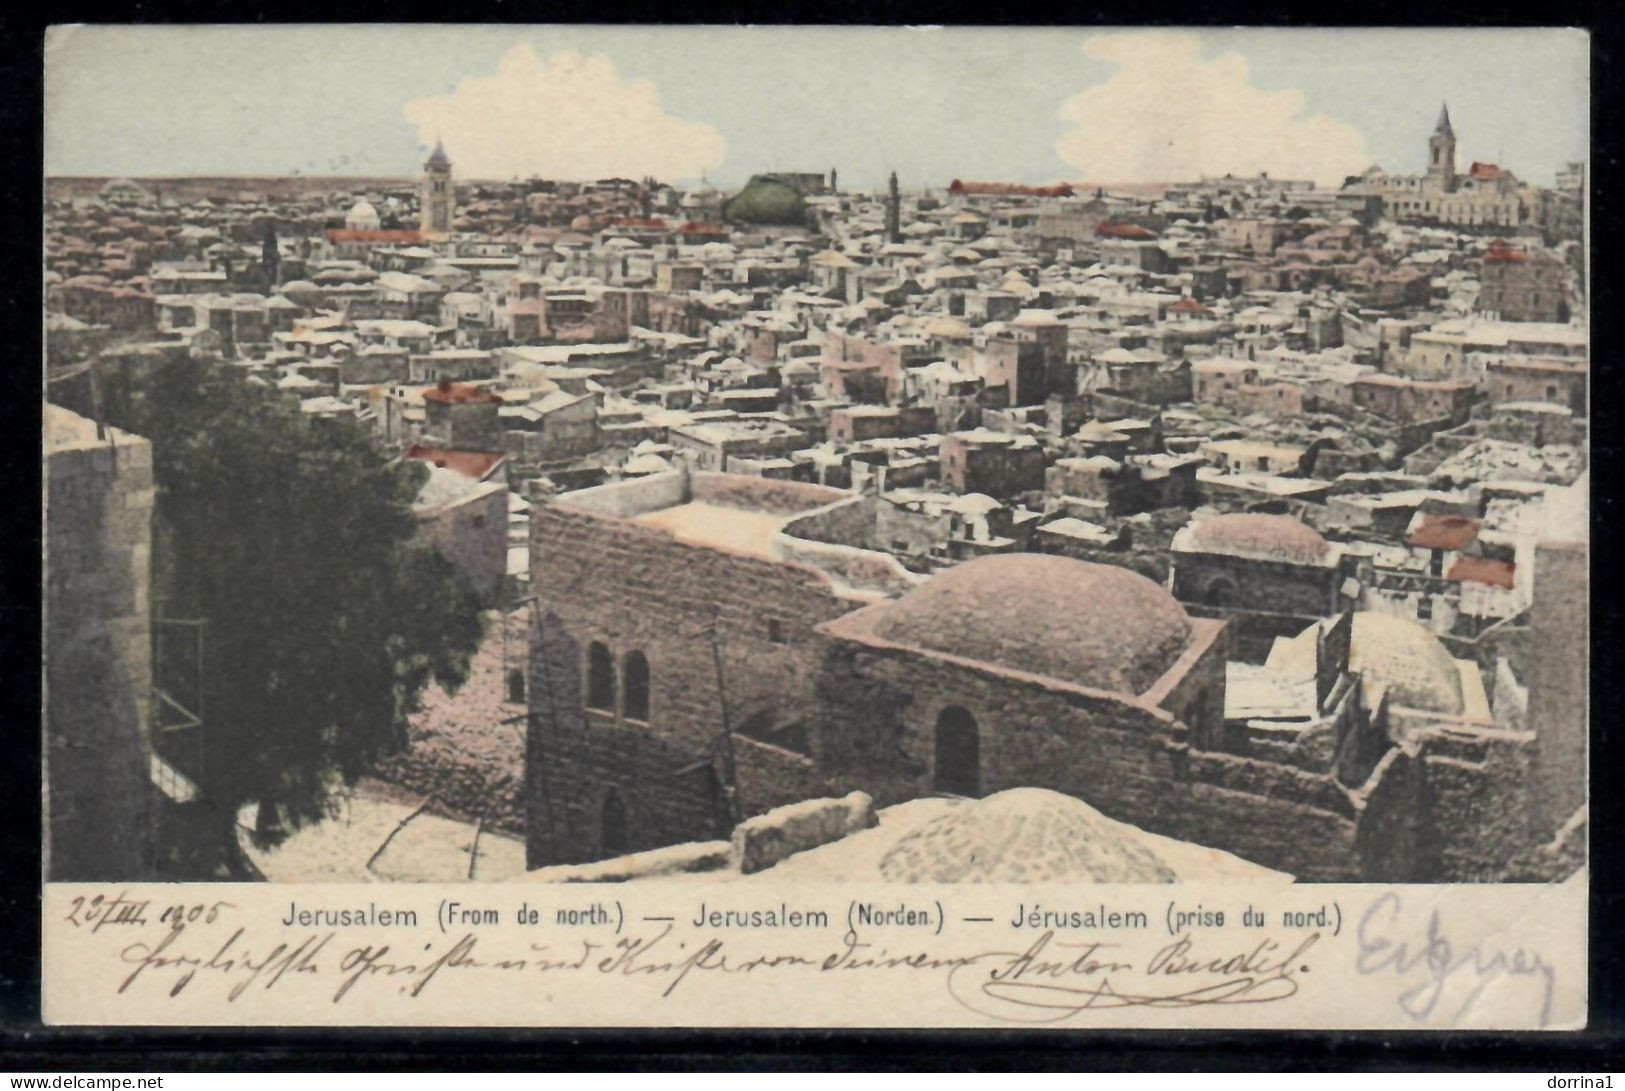 Jerusalem 1905 Austria Levant Post In Palestine Postcard - Antoine Sfeir No. 7 - Israel